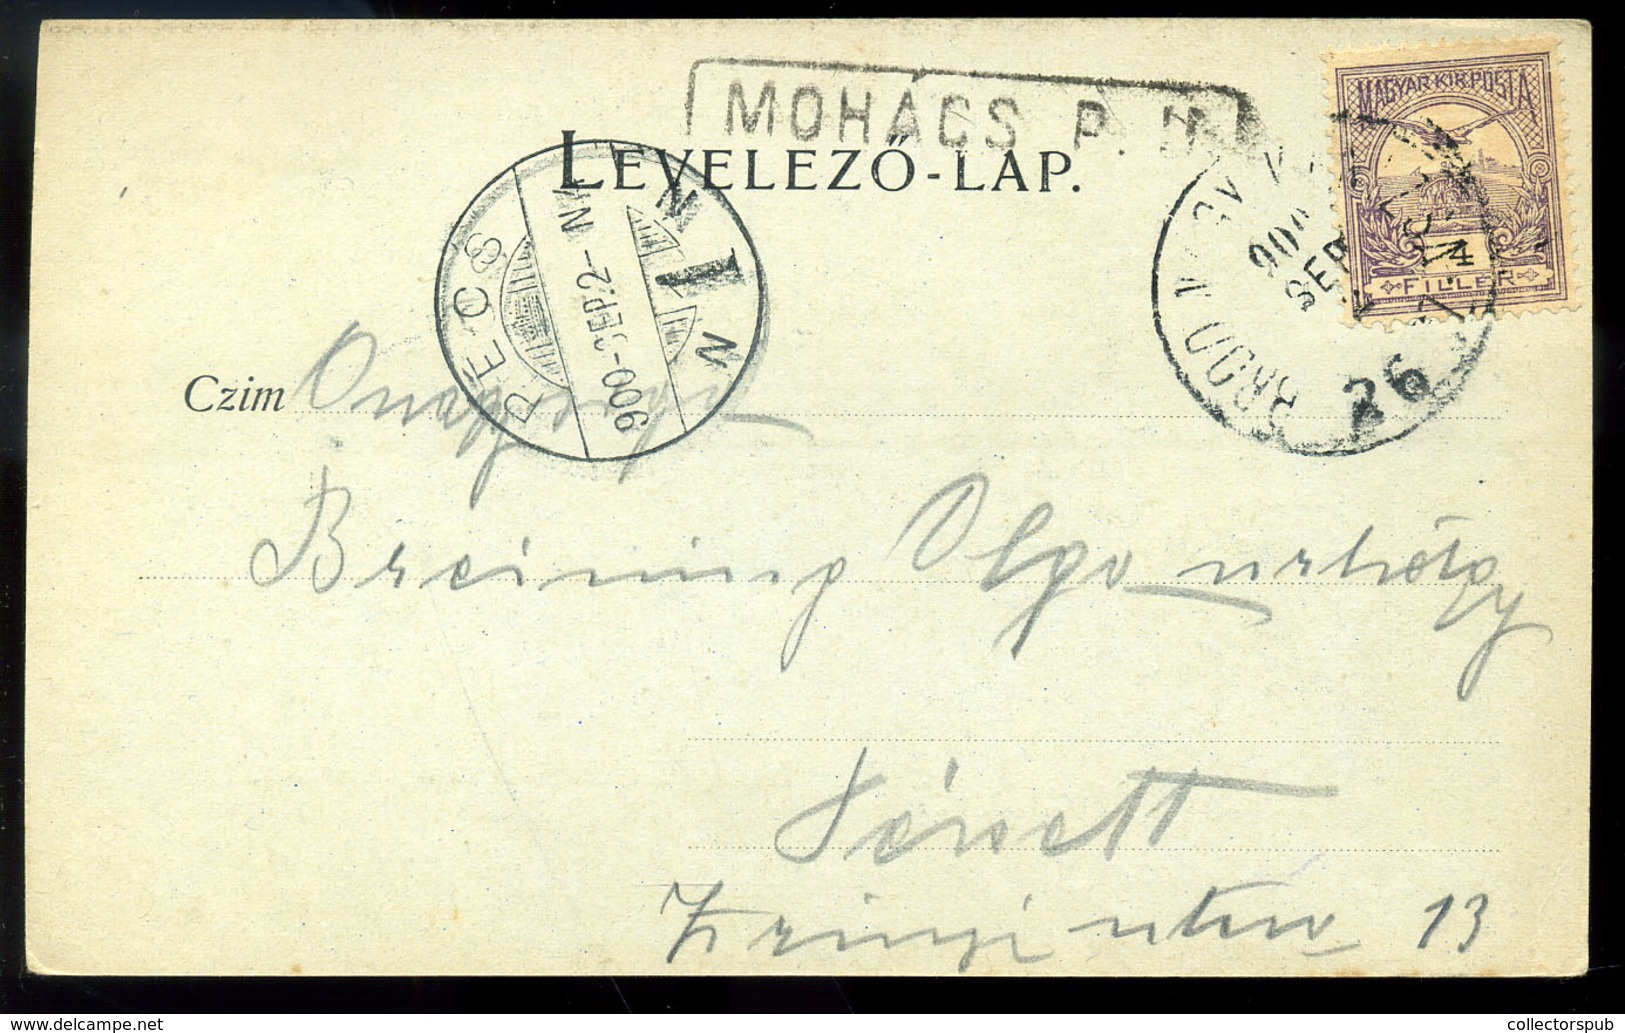 MOHÁCS 1900. D.D.S.G. Állomás, Régi Képeslap  /  Station Vintage Pic. P.card - Hungary